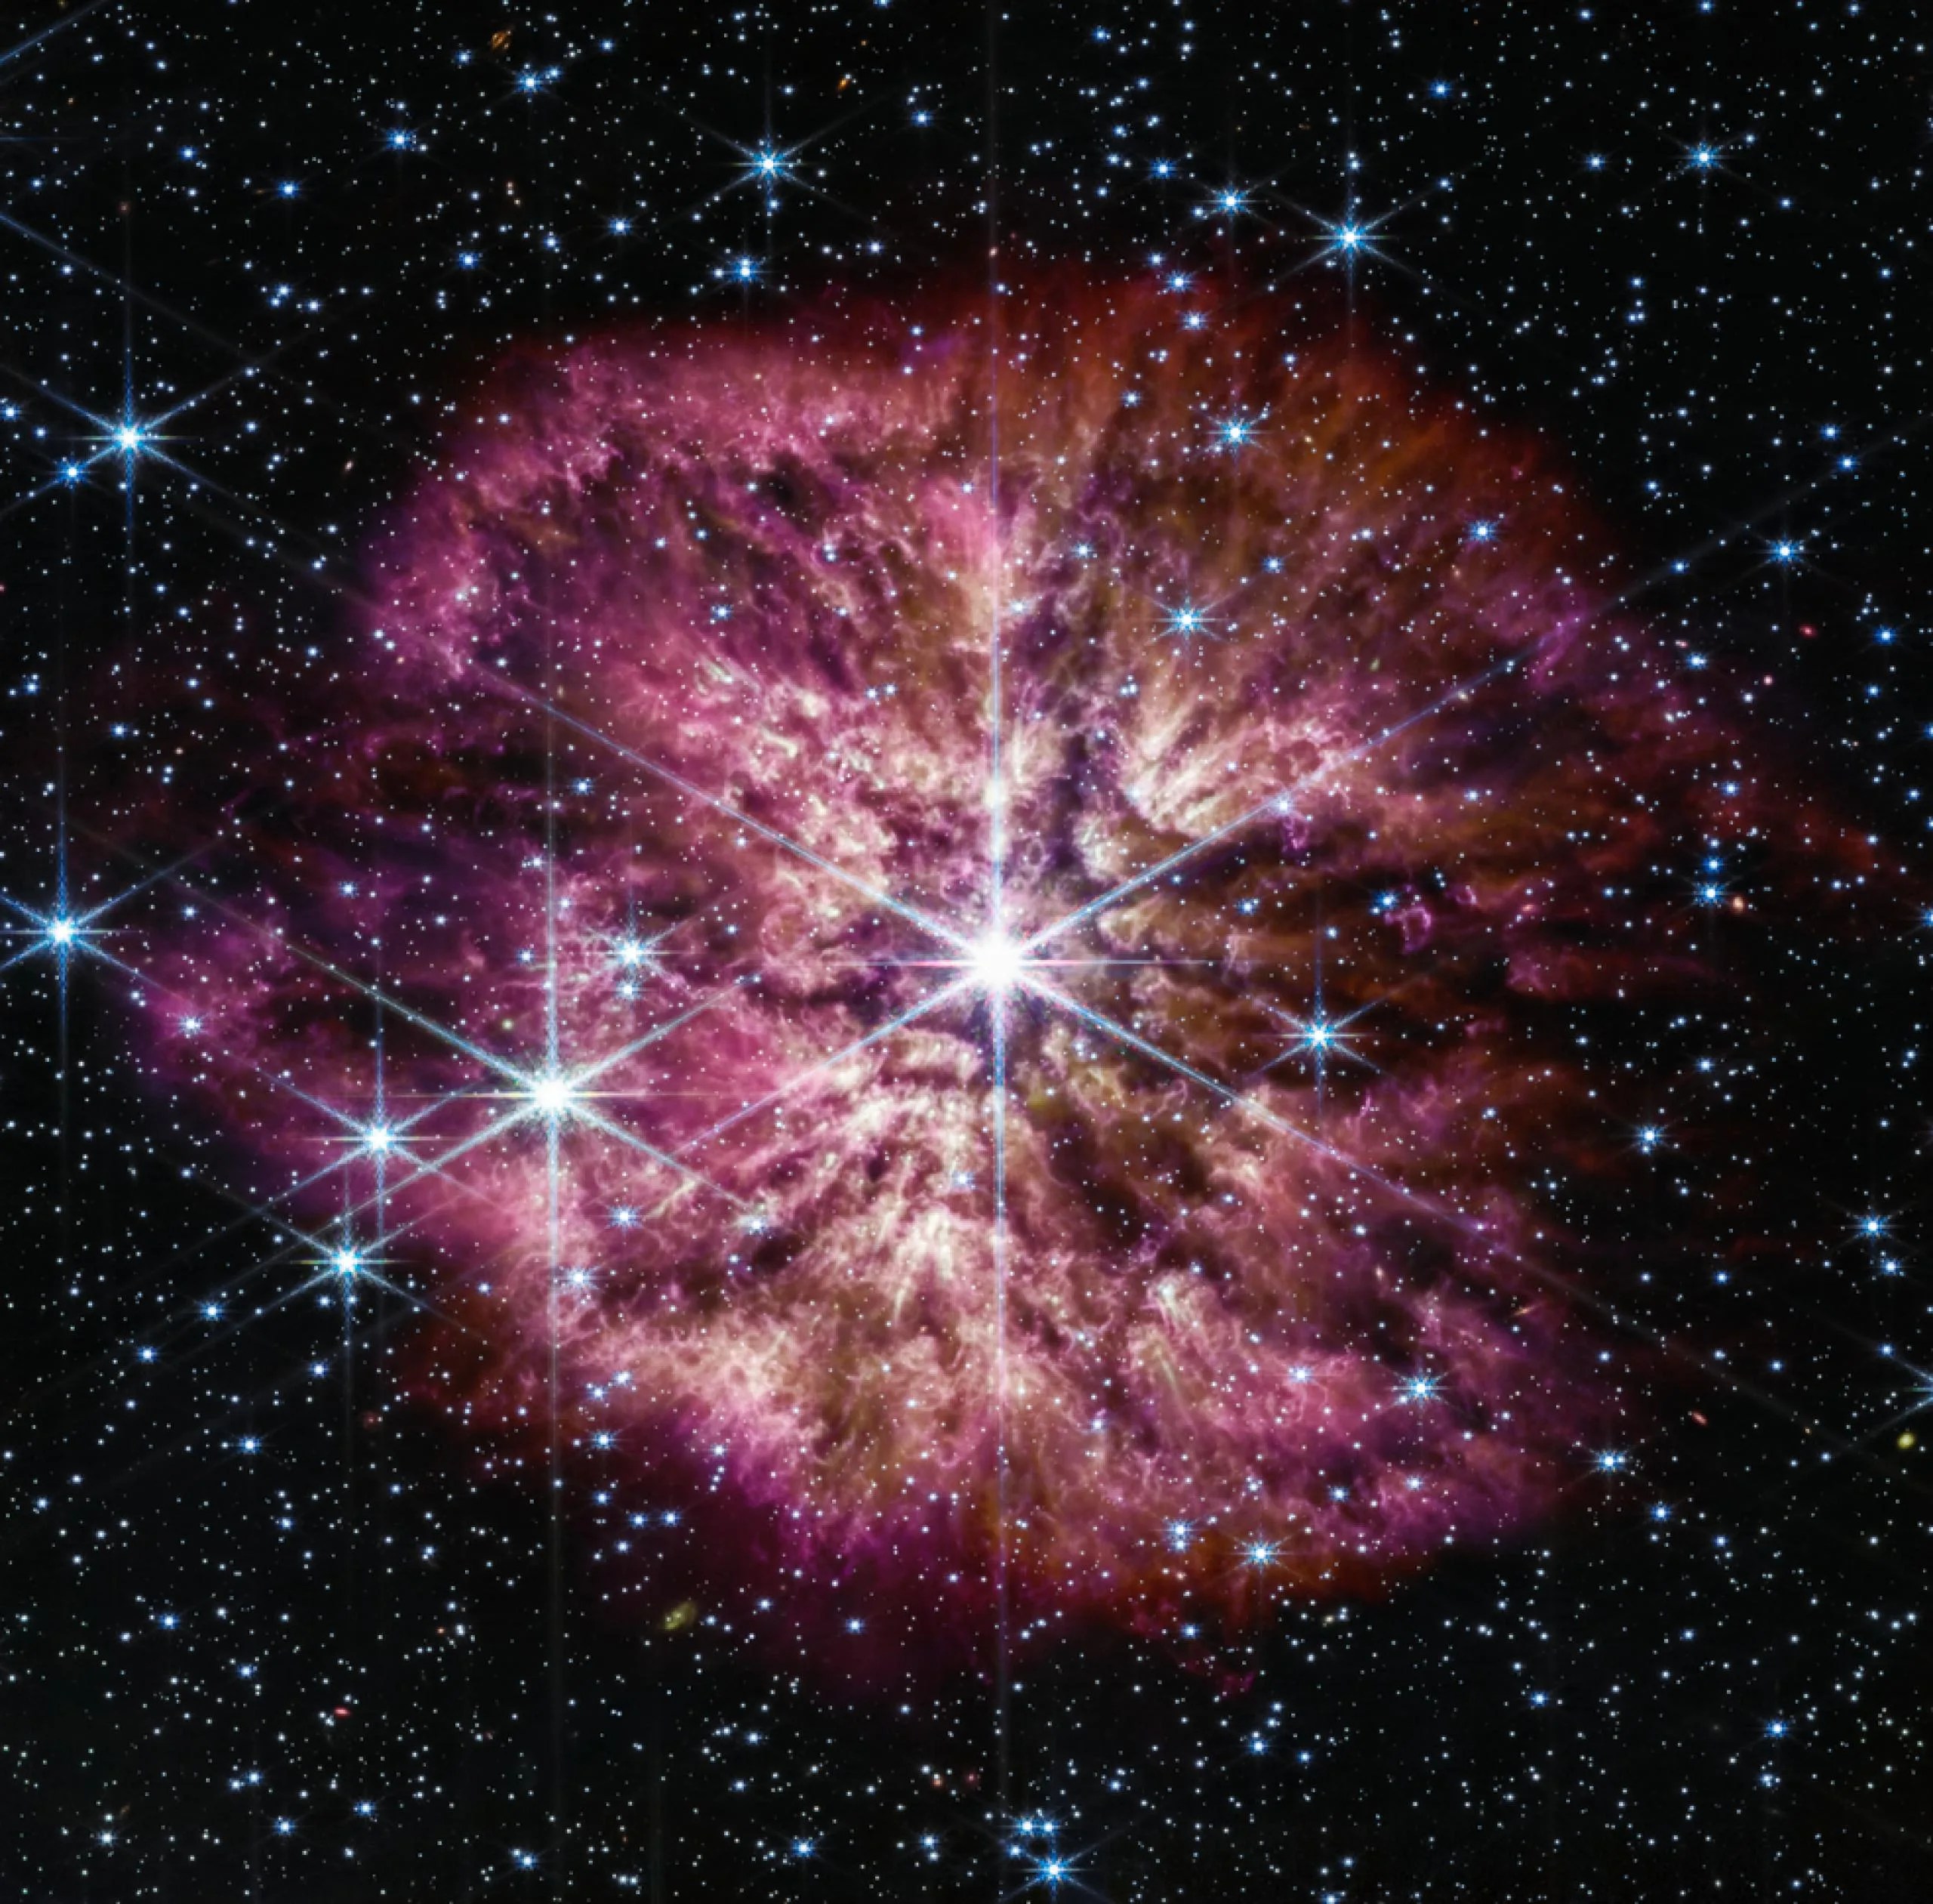 La estrella luminosa y caliente Wolf-Rayet 124 (WR 124) se destaca en el centro de la imagen compuesta del telescopio espacial James Webb, que combina longitudes de ondas de luz del infrarrojo cercano y el infrarrojo medio obtenidas por la cámara de infrarrojo cercano y el instrumento de infrarrojo medio de Webb.